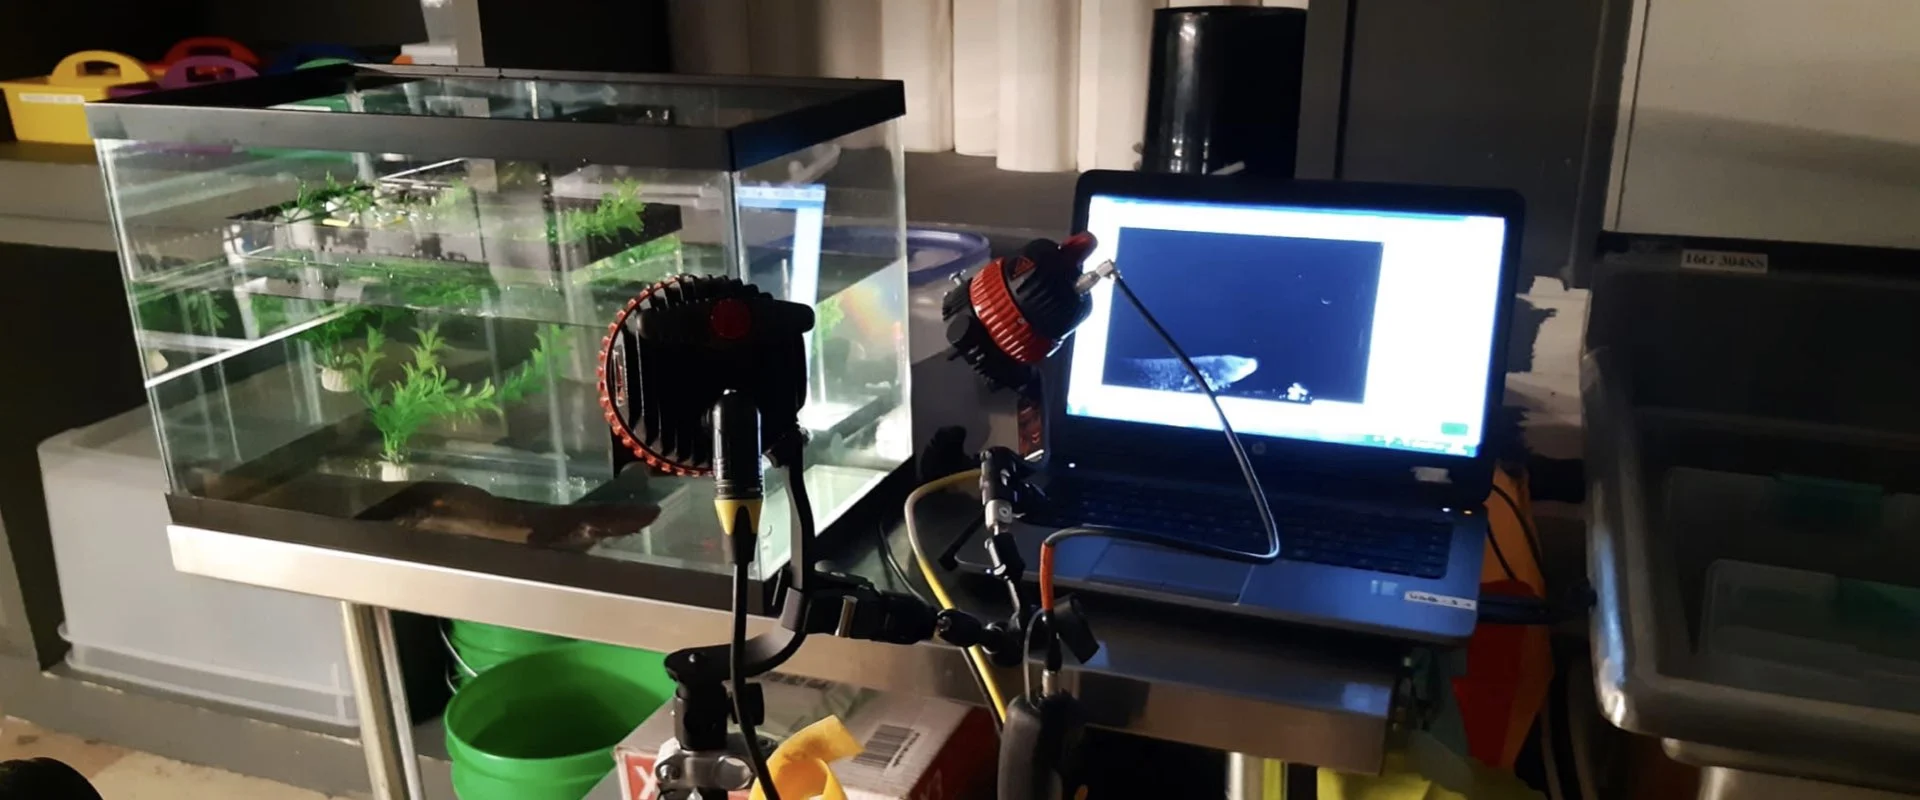 Une installation de tournage comprenant un réservoir rempli d'eau avec une salamandre à côté d'un ordinateur avec une caméra et des lumières.